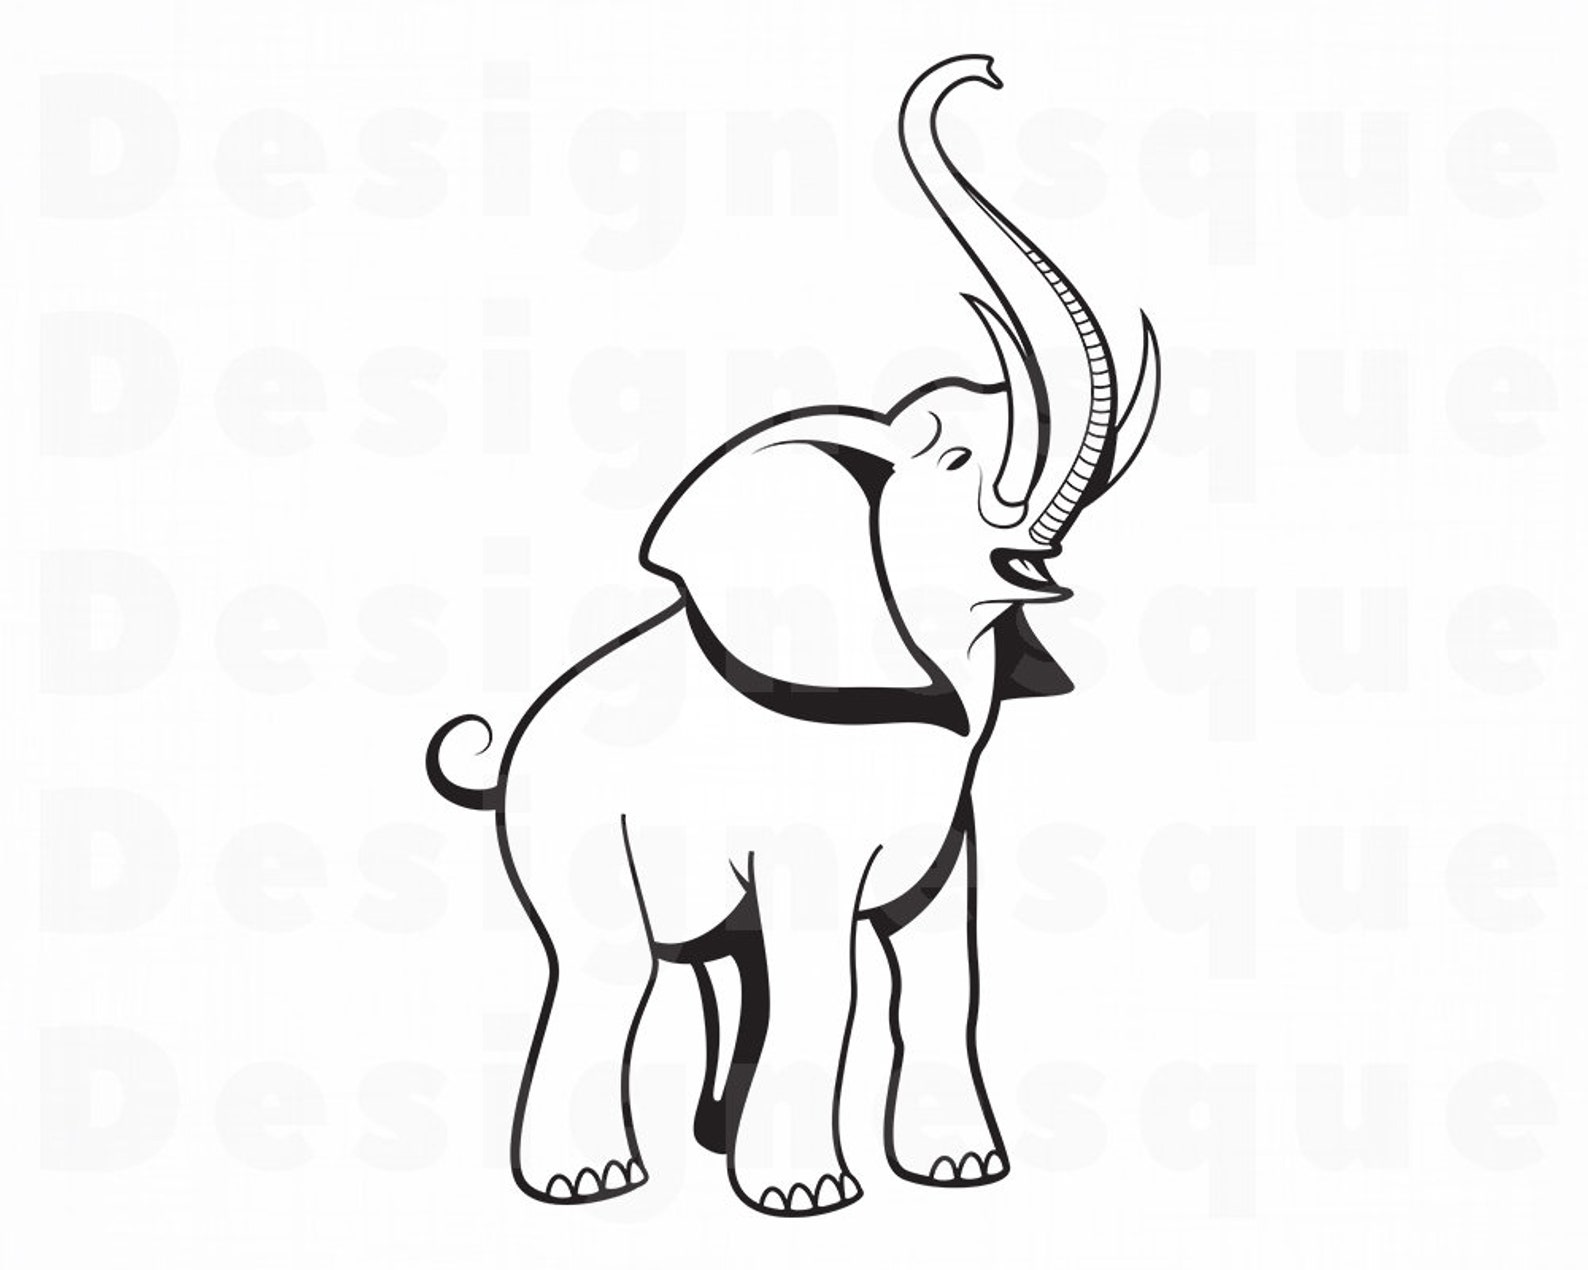 Elephant Outline 2 SVG Elephant SVG Elephant Outline | Etsy India